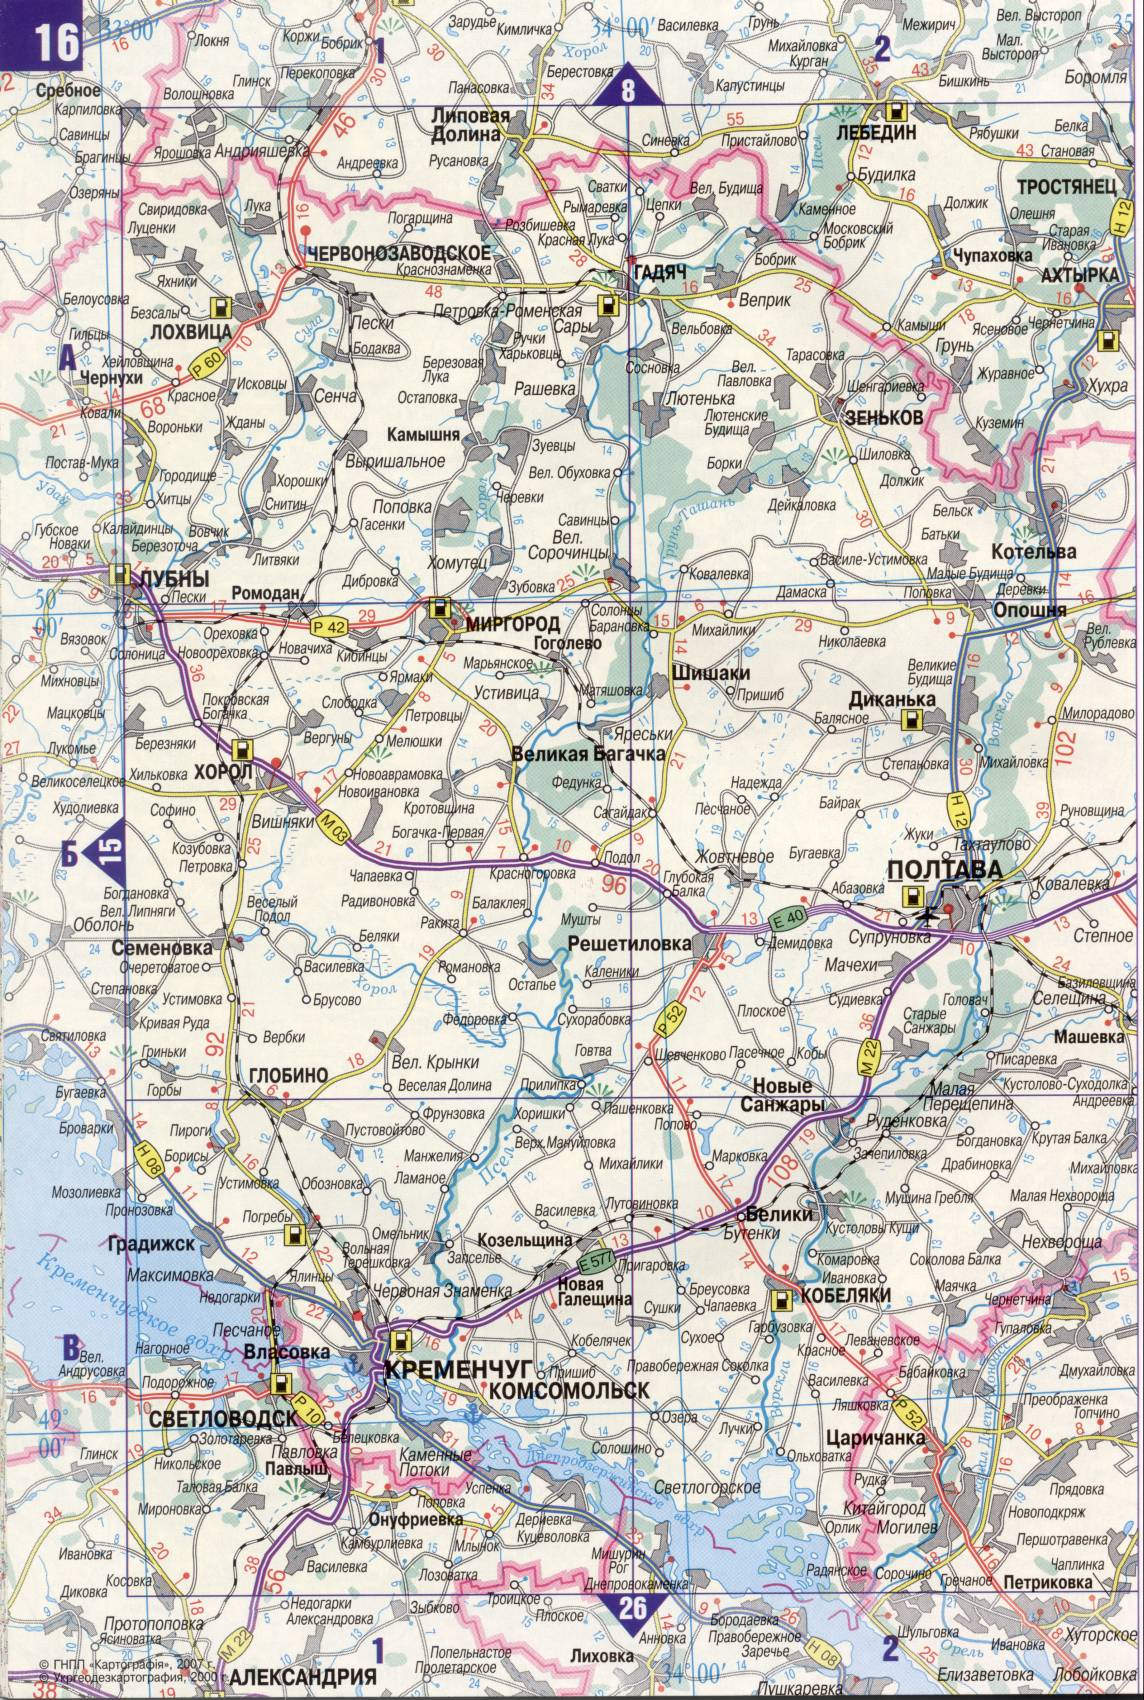 Карта Украины. Подробная карта дорог Украина из автомобильног атласа. скачать бесплатно, G1